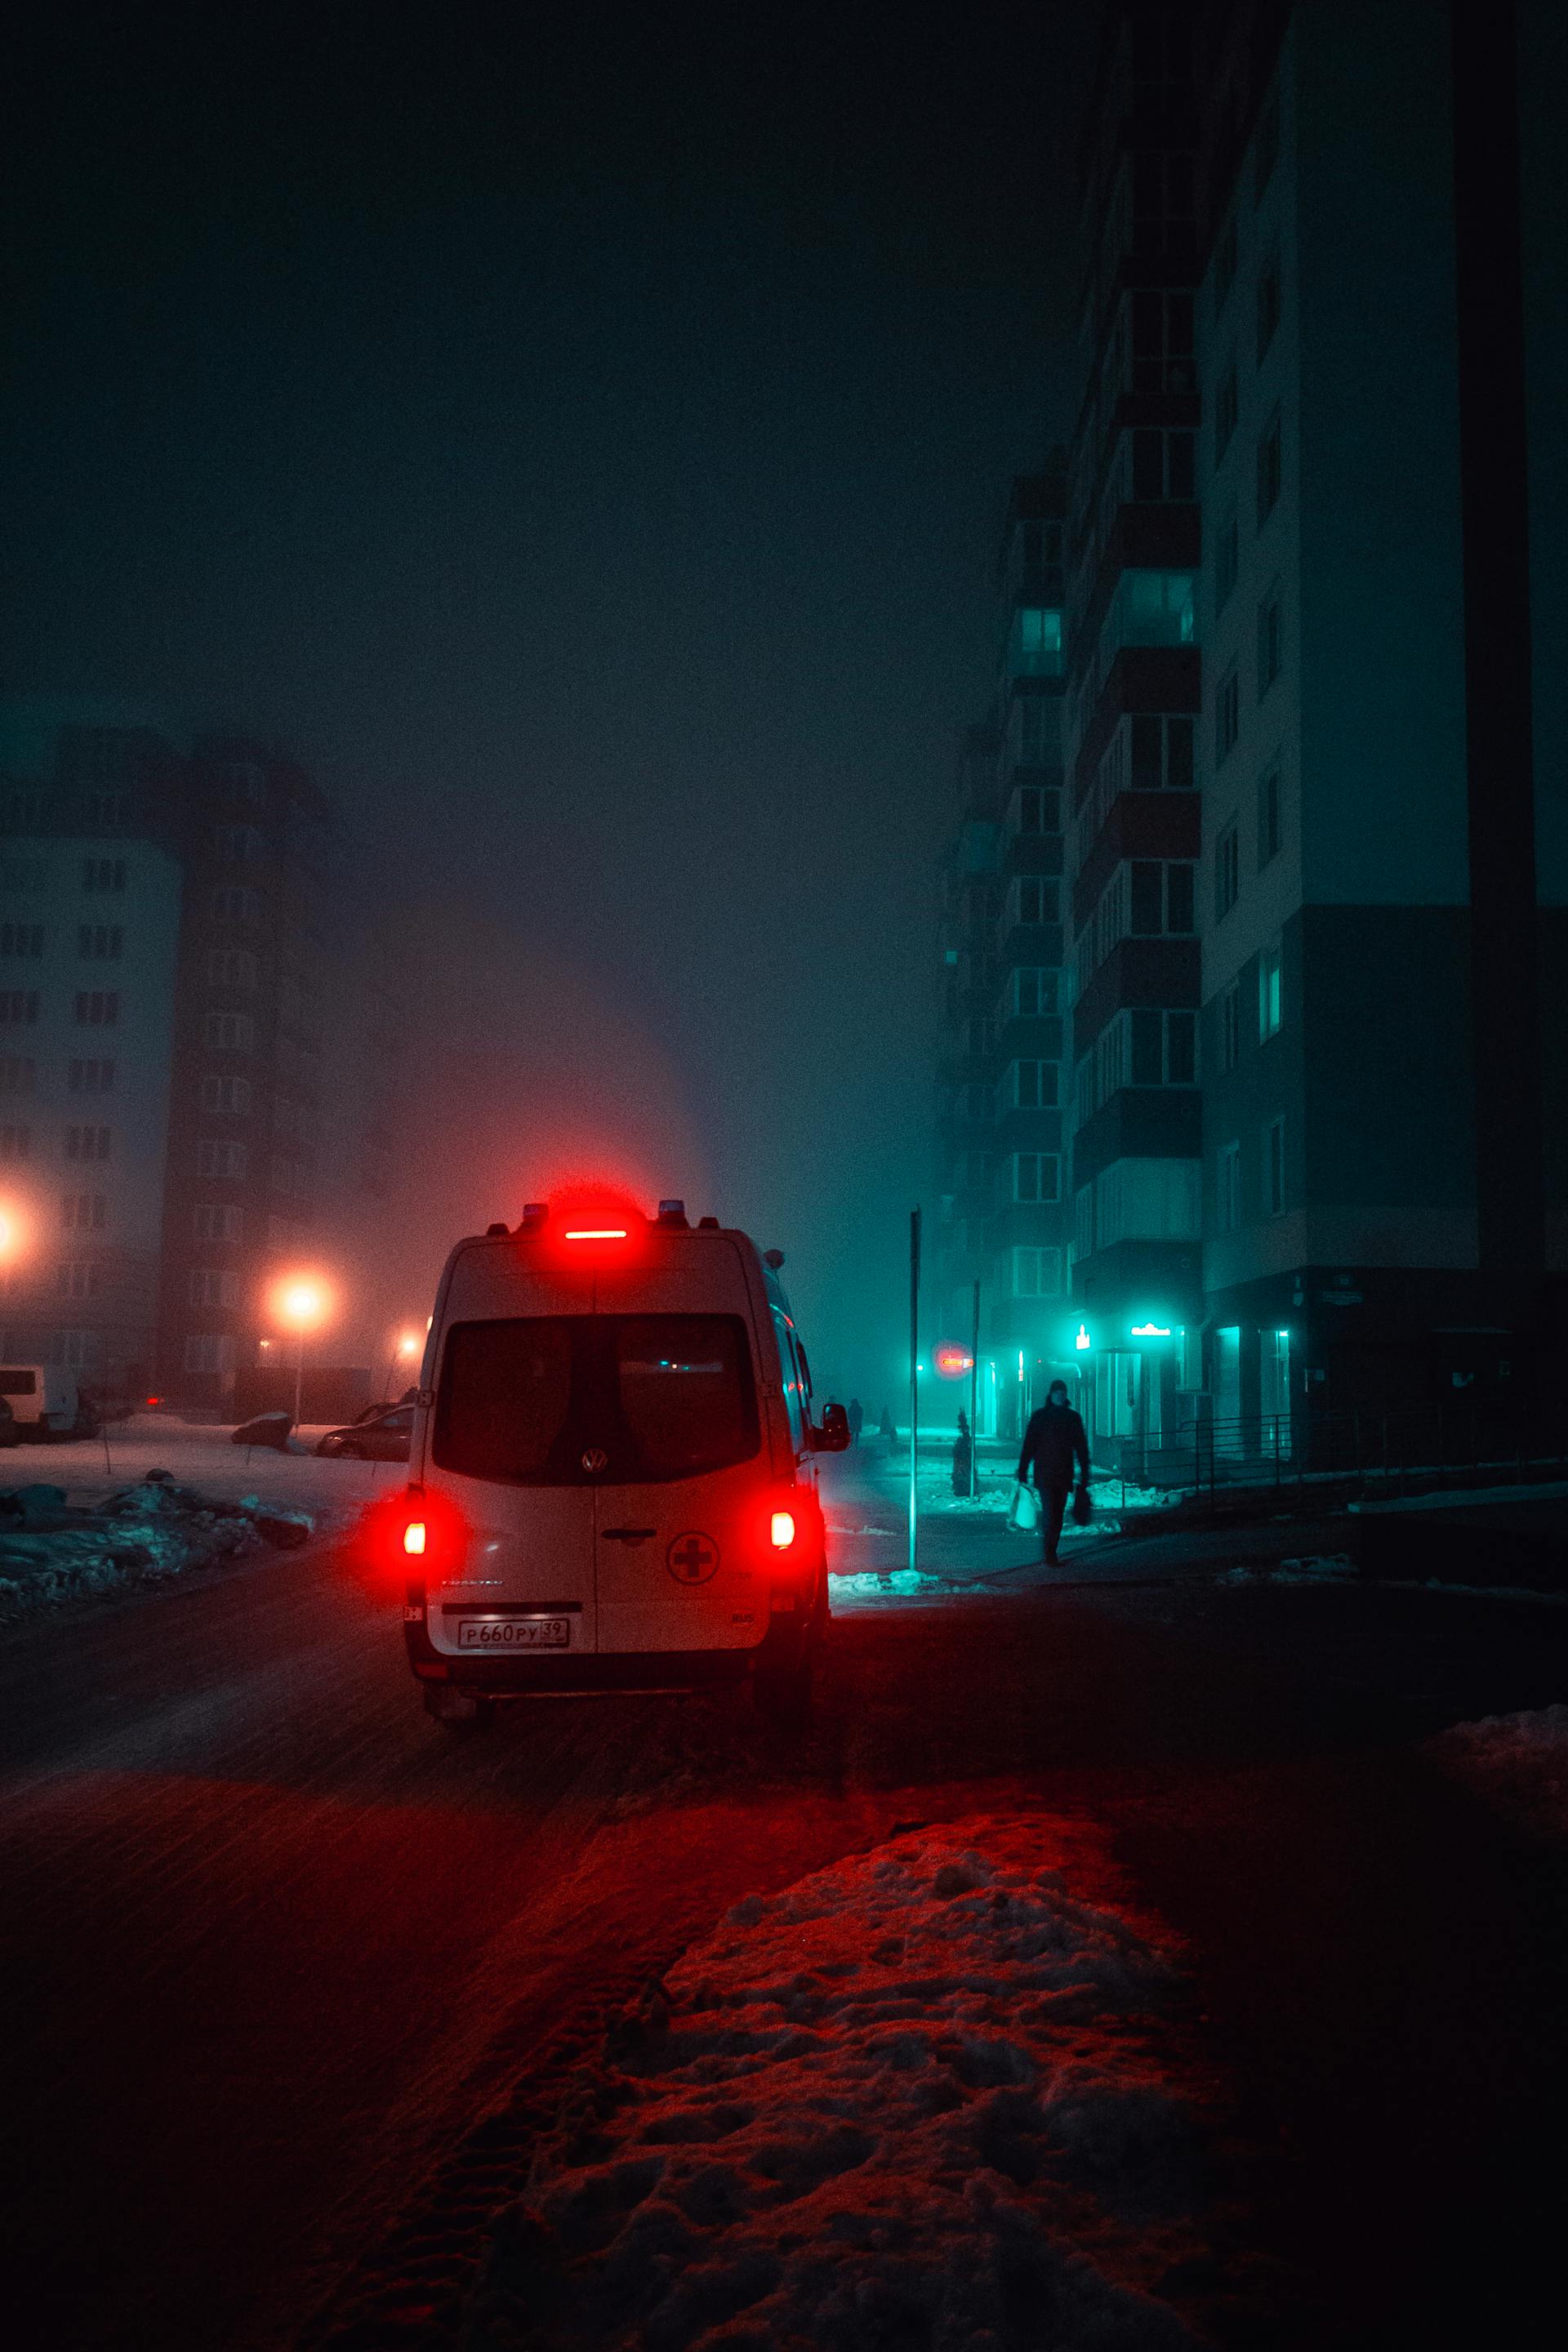 An ambulance at night | Source: Pexels